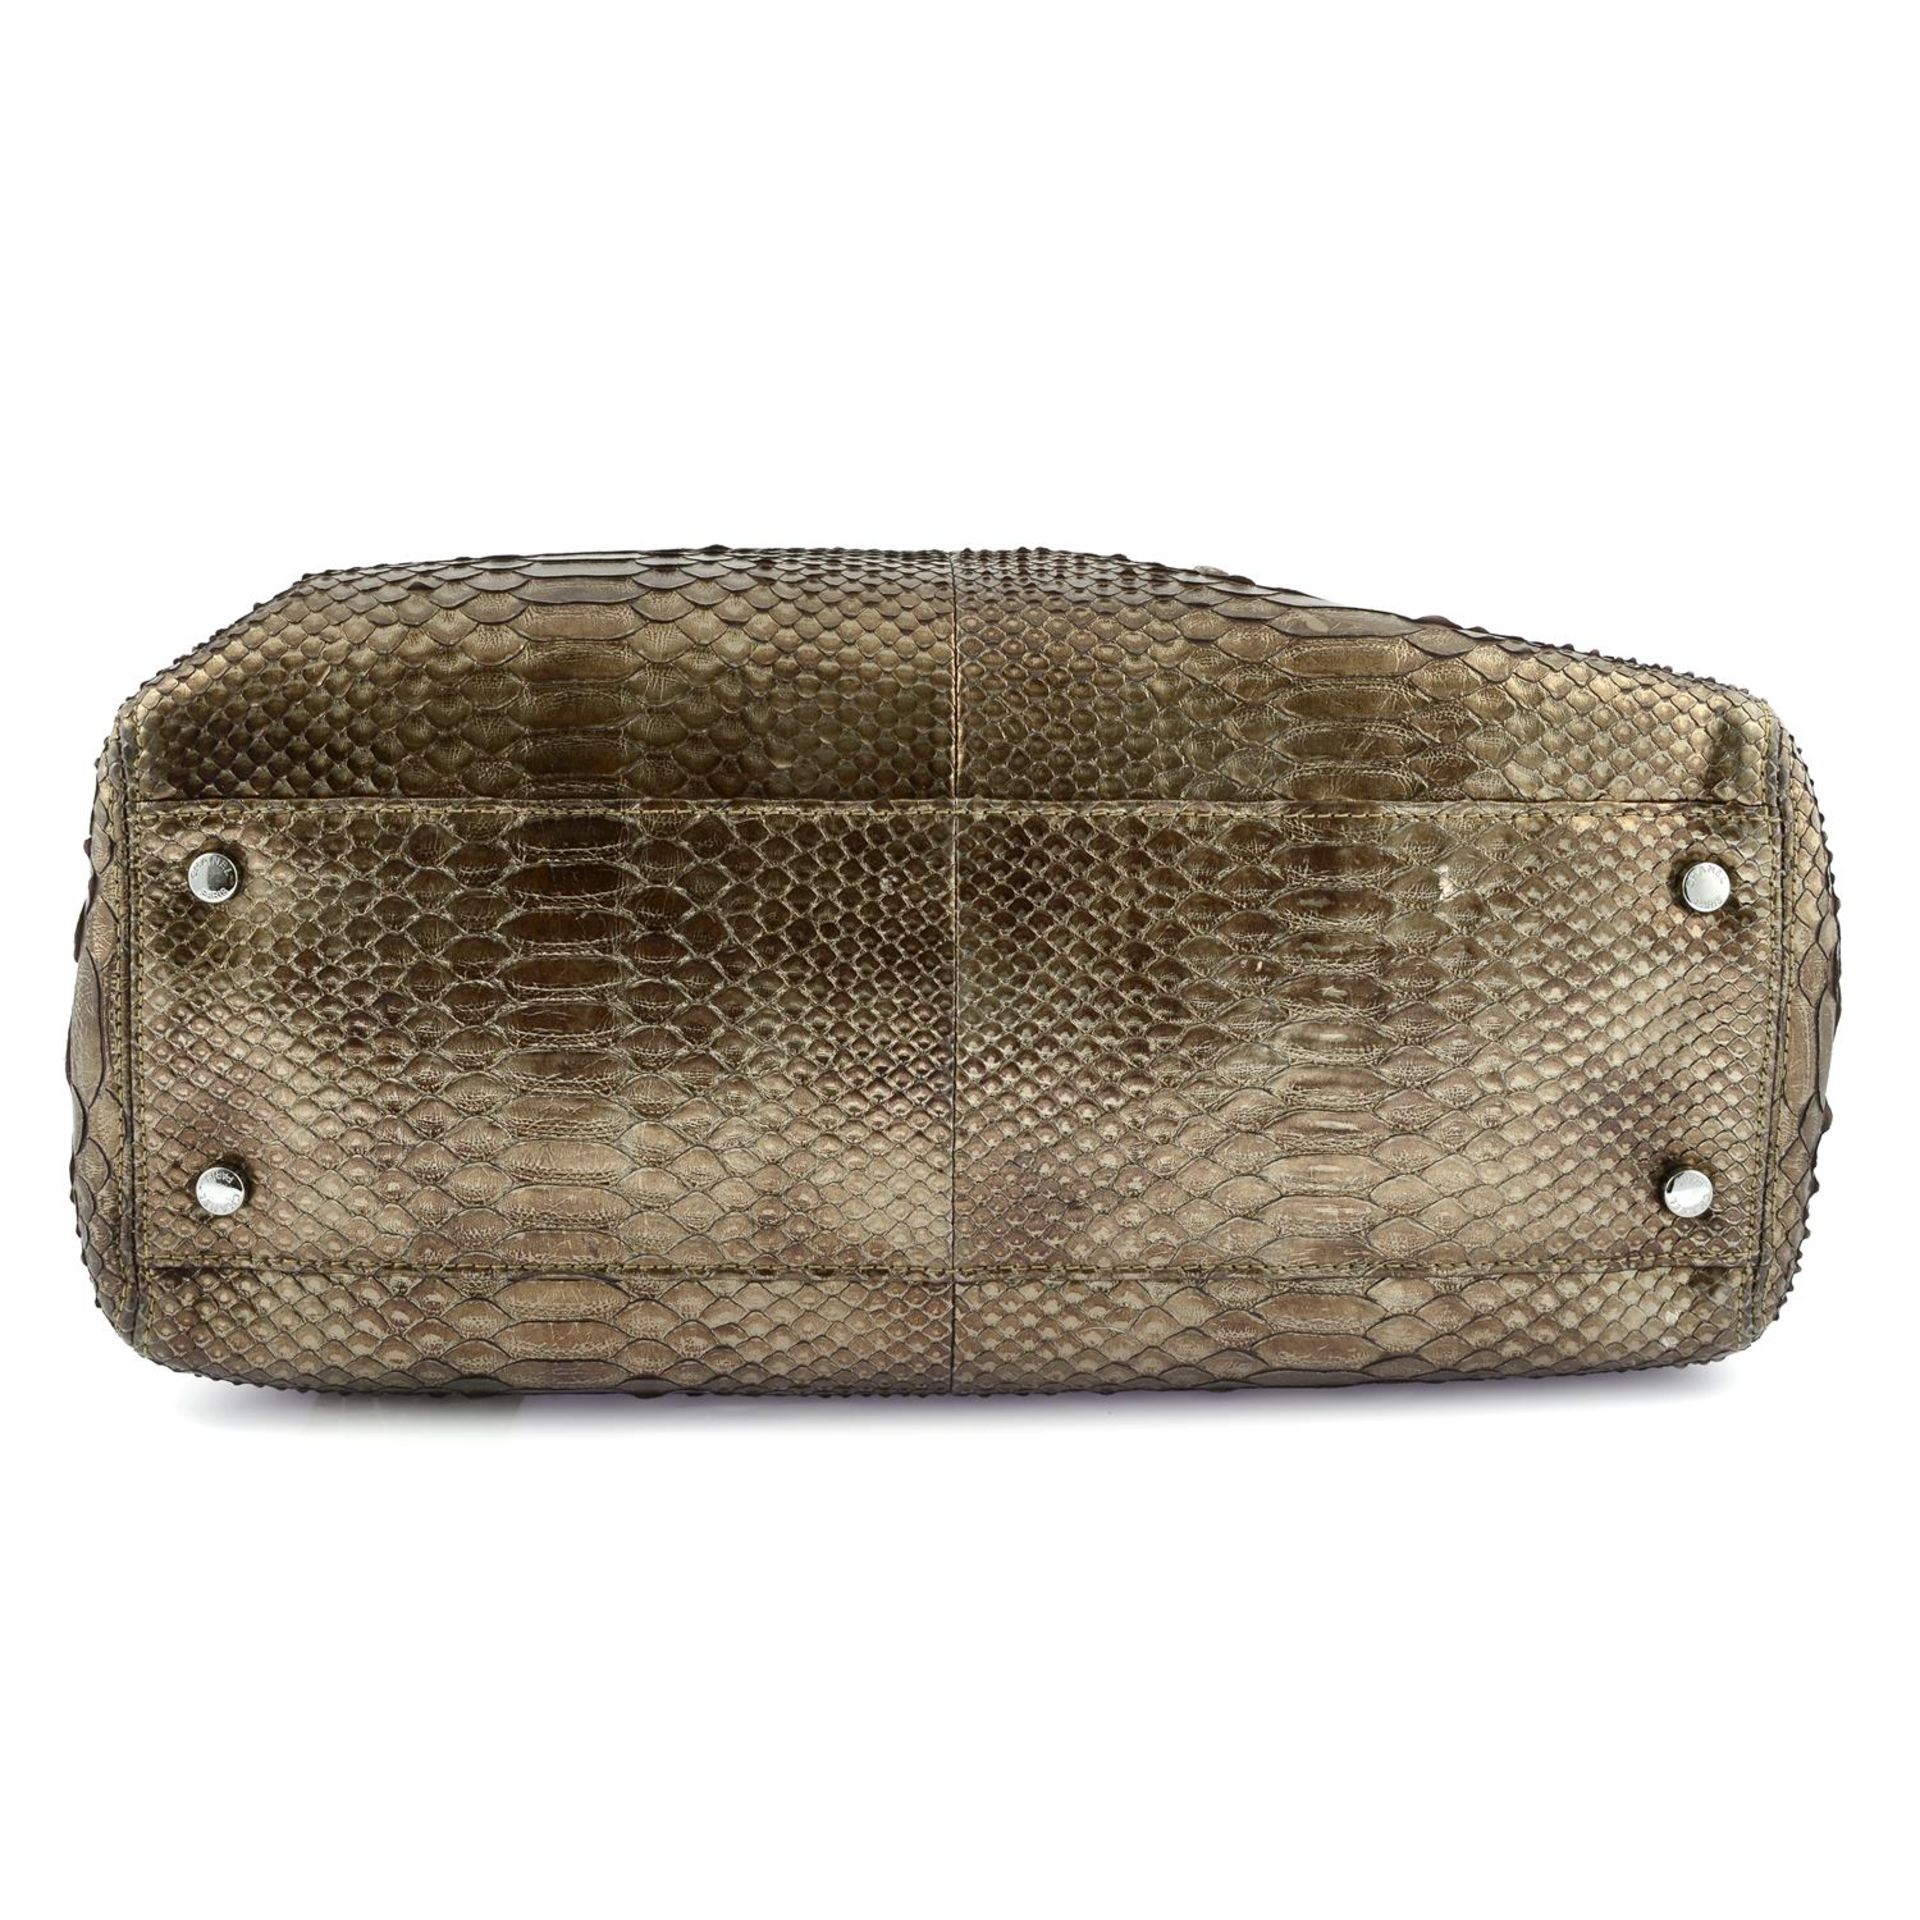 CHANEL - A bronze metallic Python handbag - Image 5 of 5